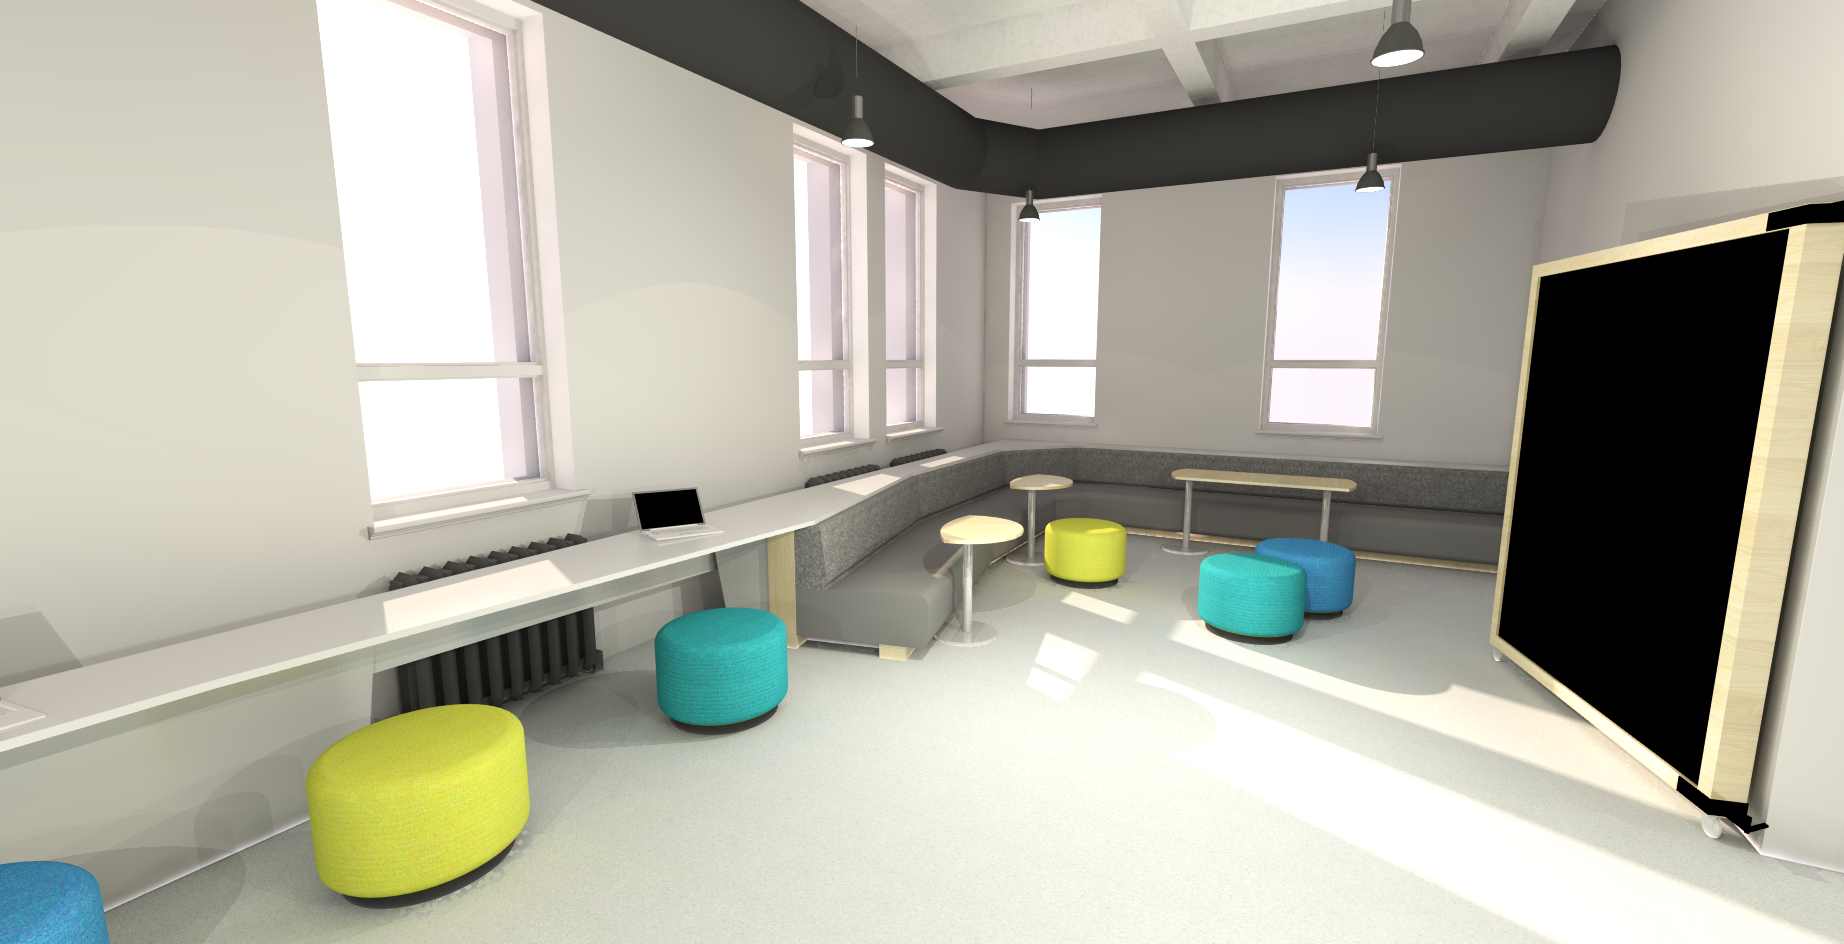 Dessin 3D représentant un espace pour les étudiants, l'aire commune.